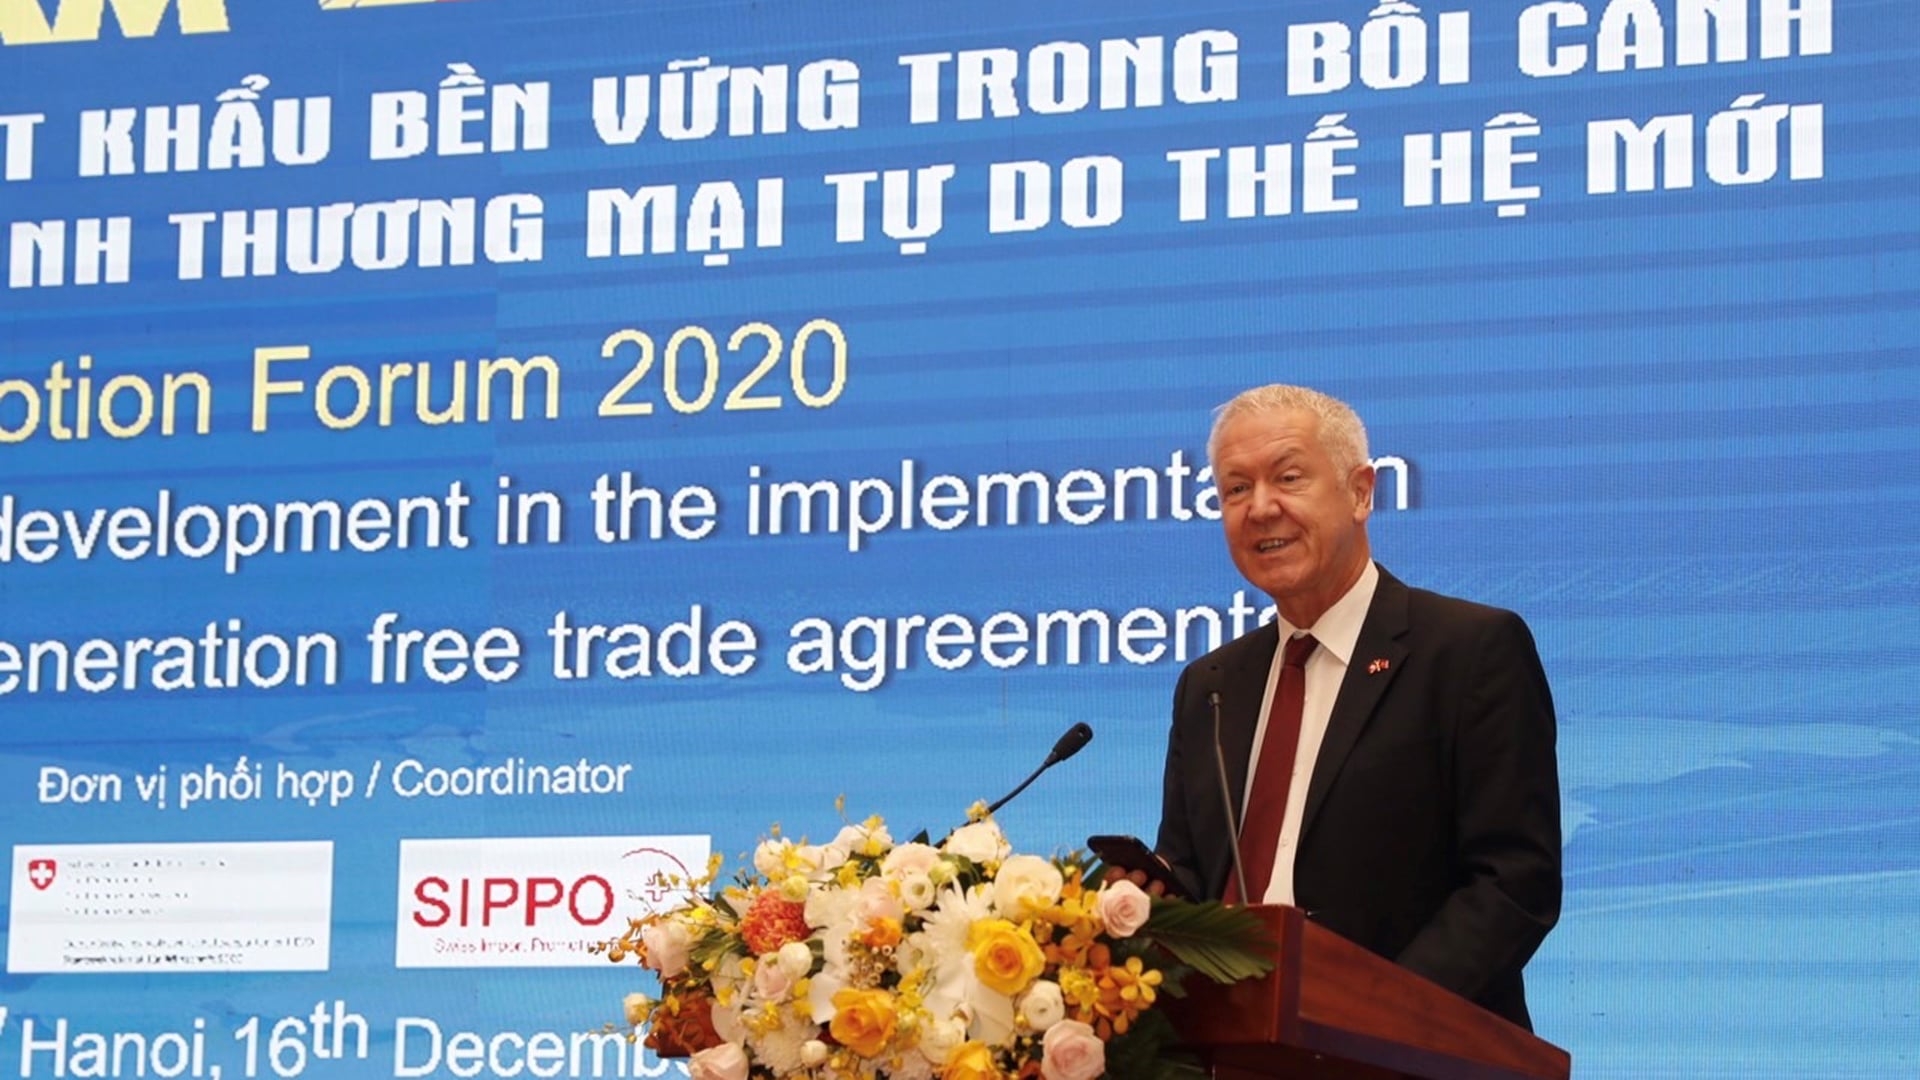 Vietnam Export Promotion Forum 2020: Towards sustainable export